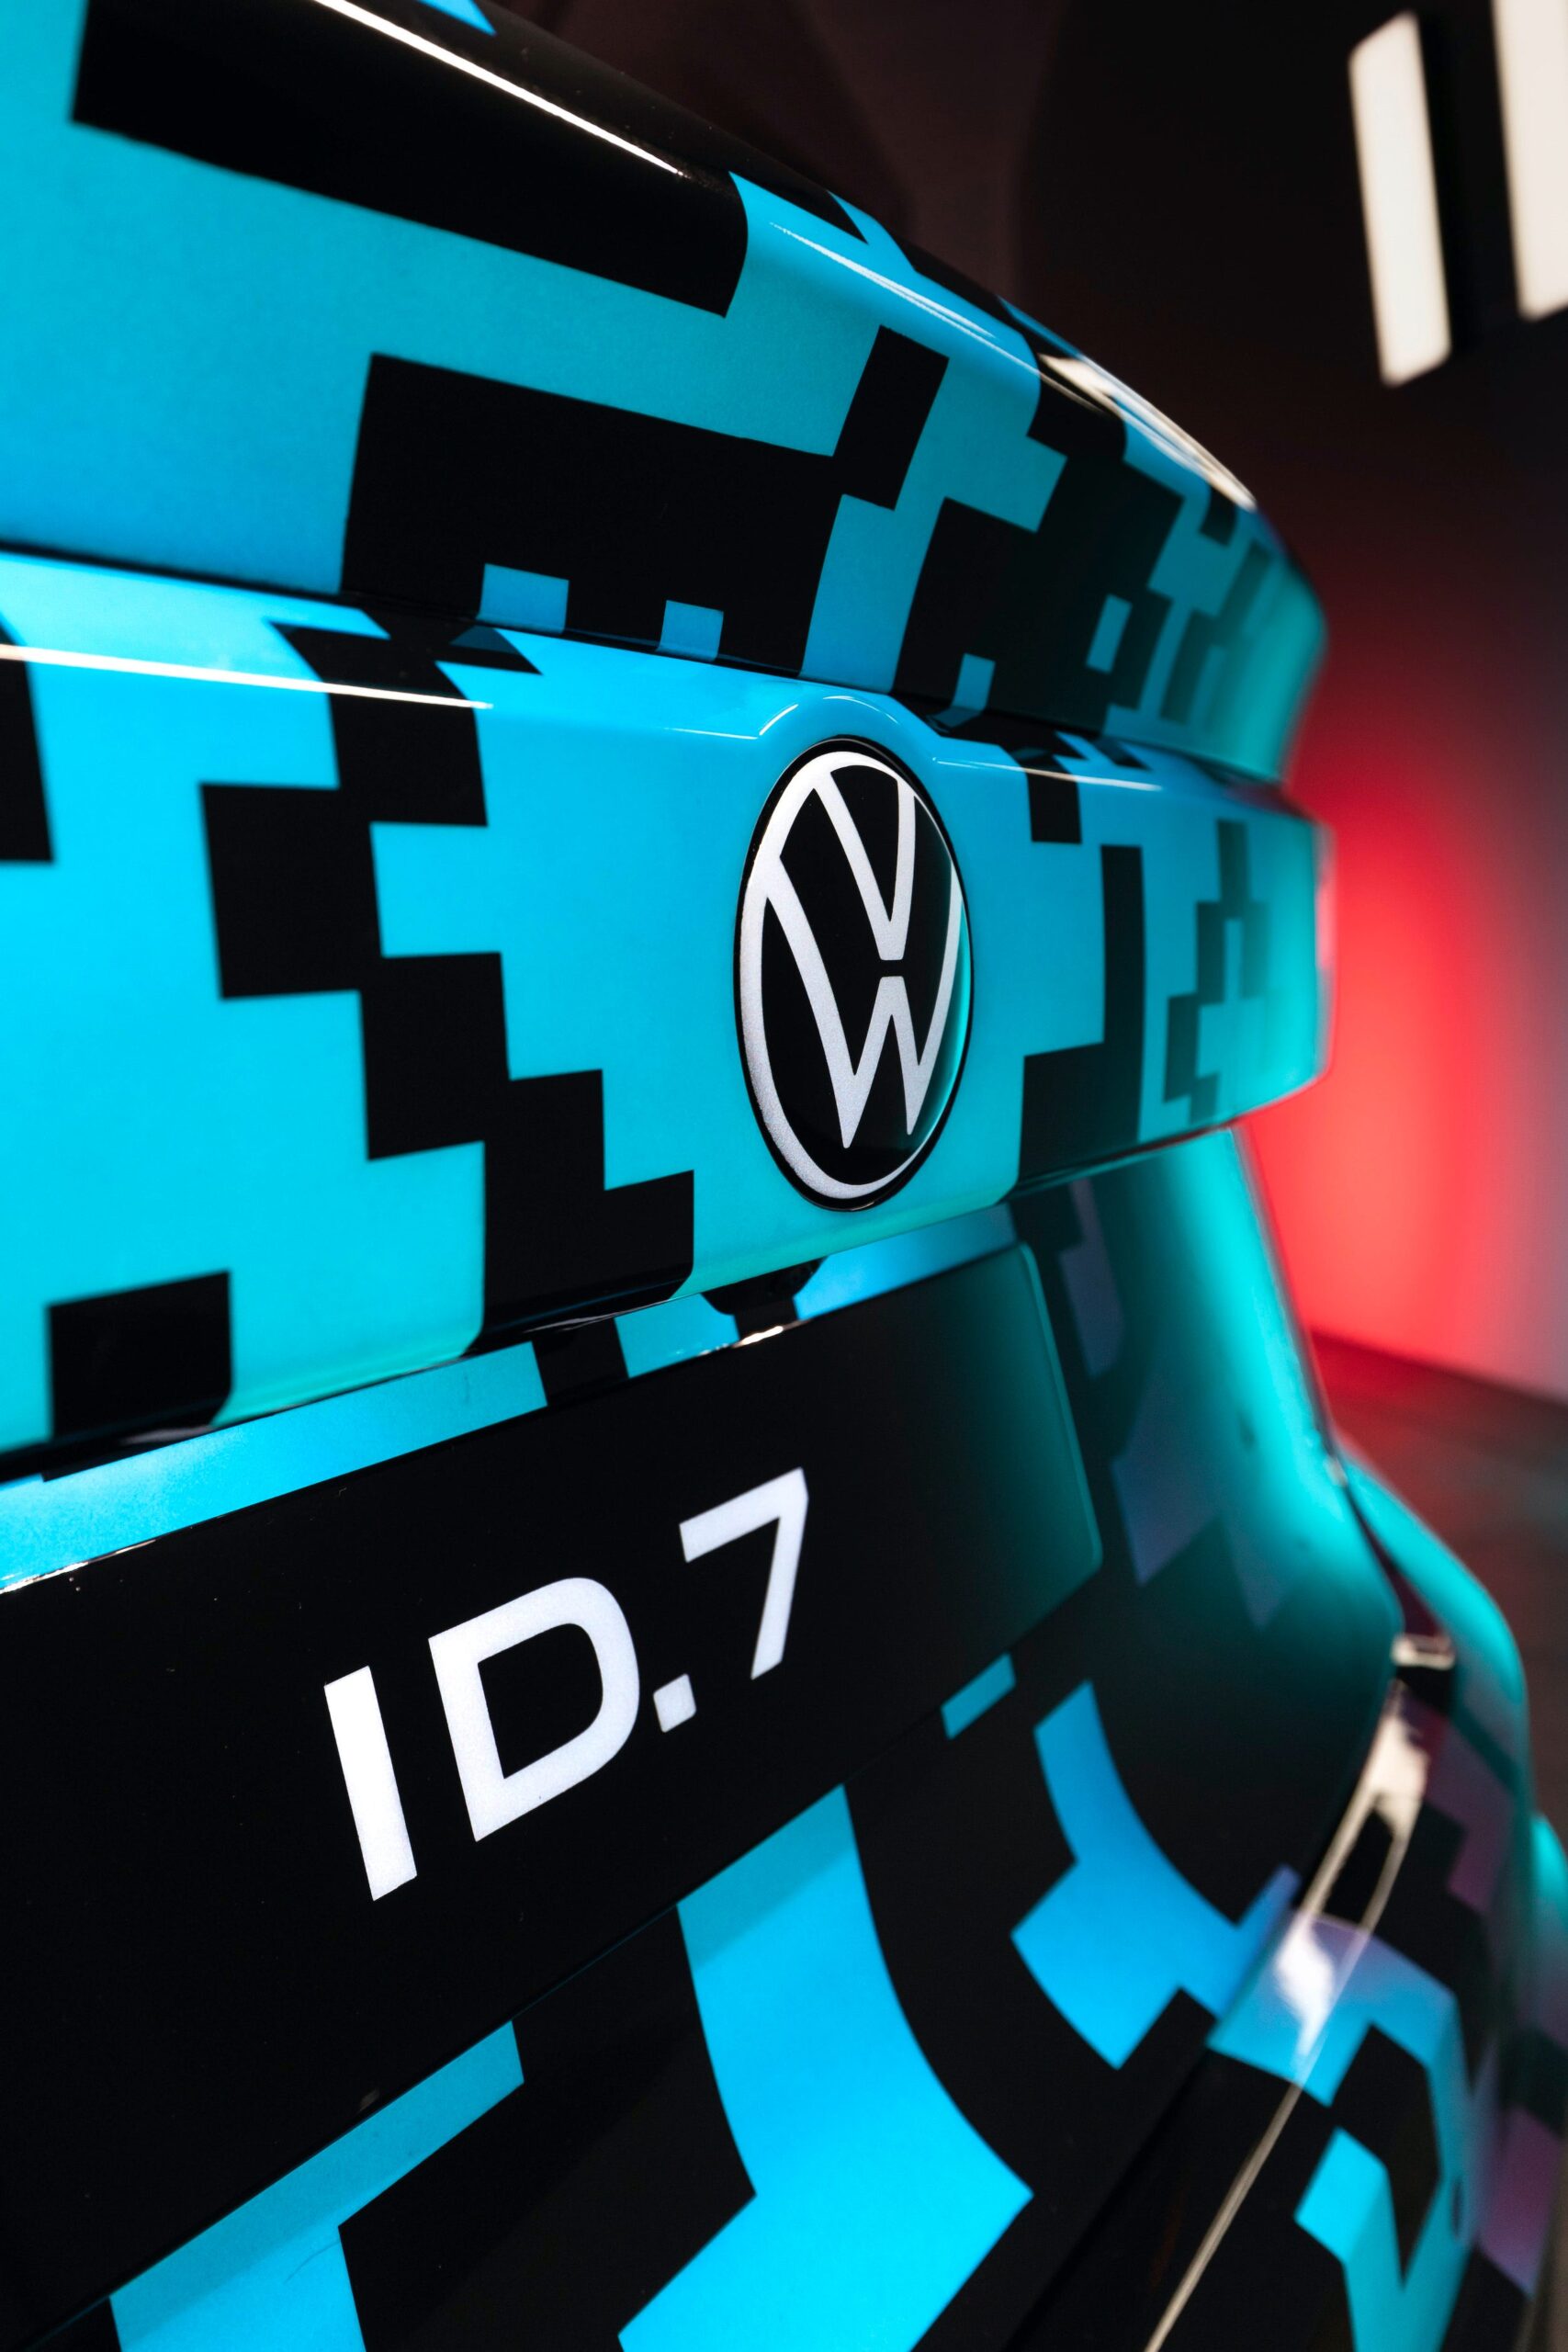 Volkswagen ID.7